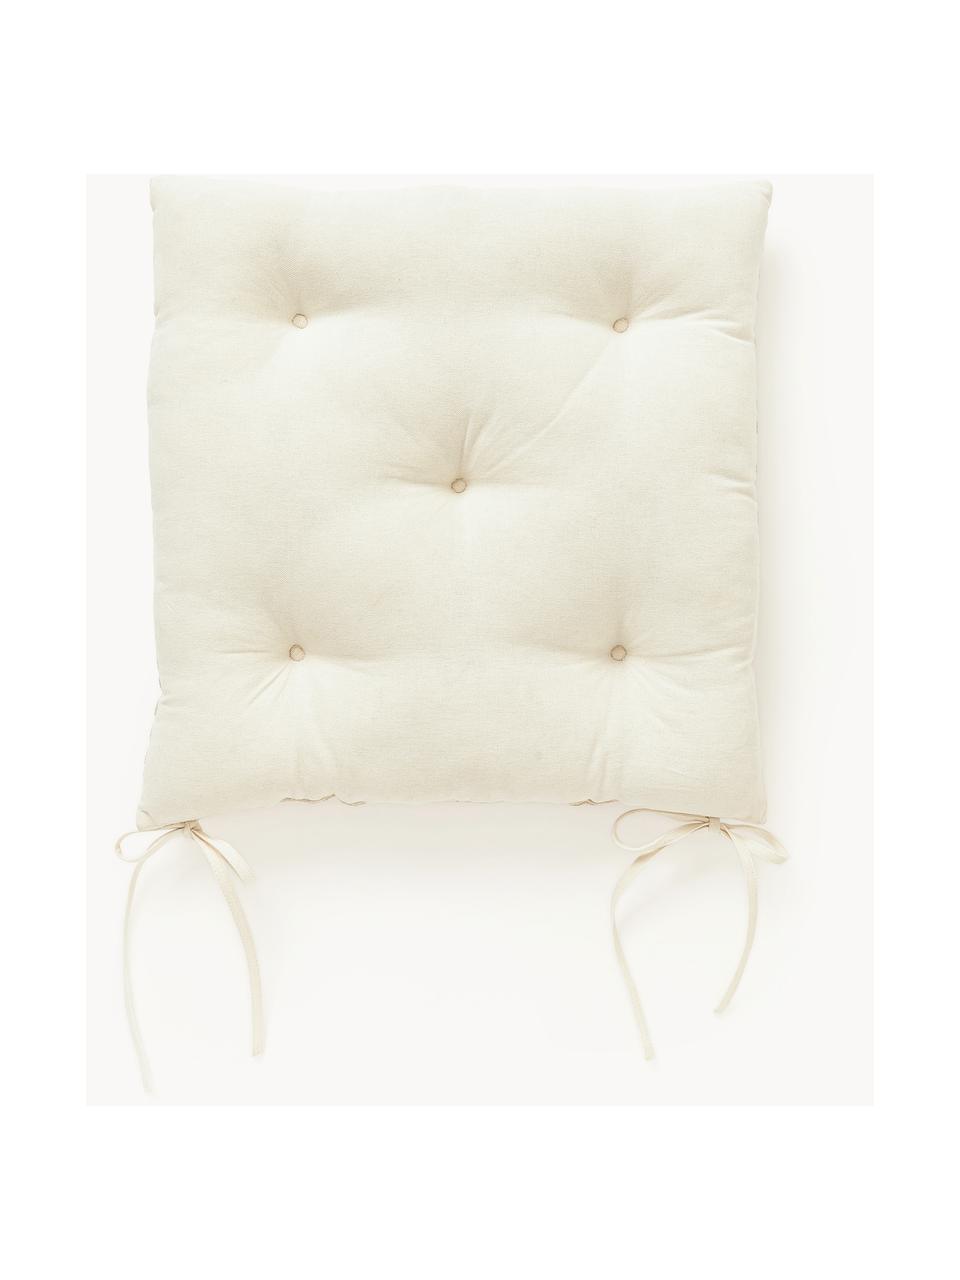 Cojín de asiento de algodón con decoración gráfica Sevil, 2 uds., Funda: 100% algodón, Off White, blanco crema, An 40 x L 40 cm